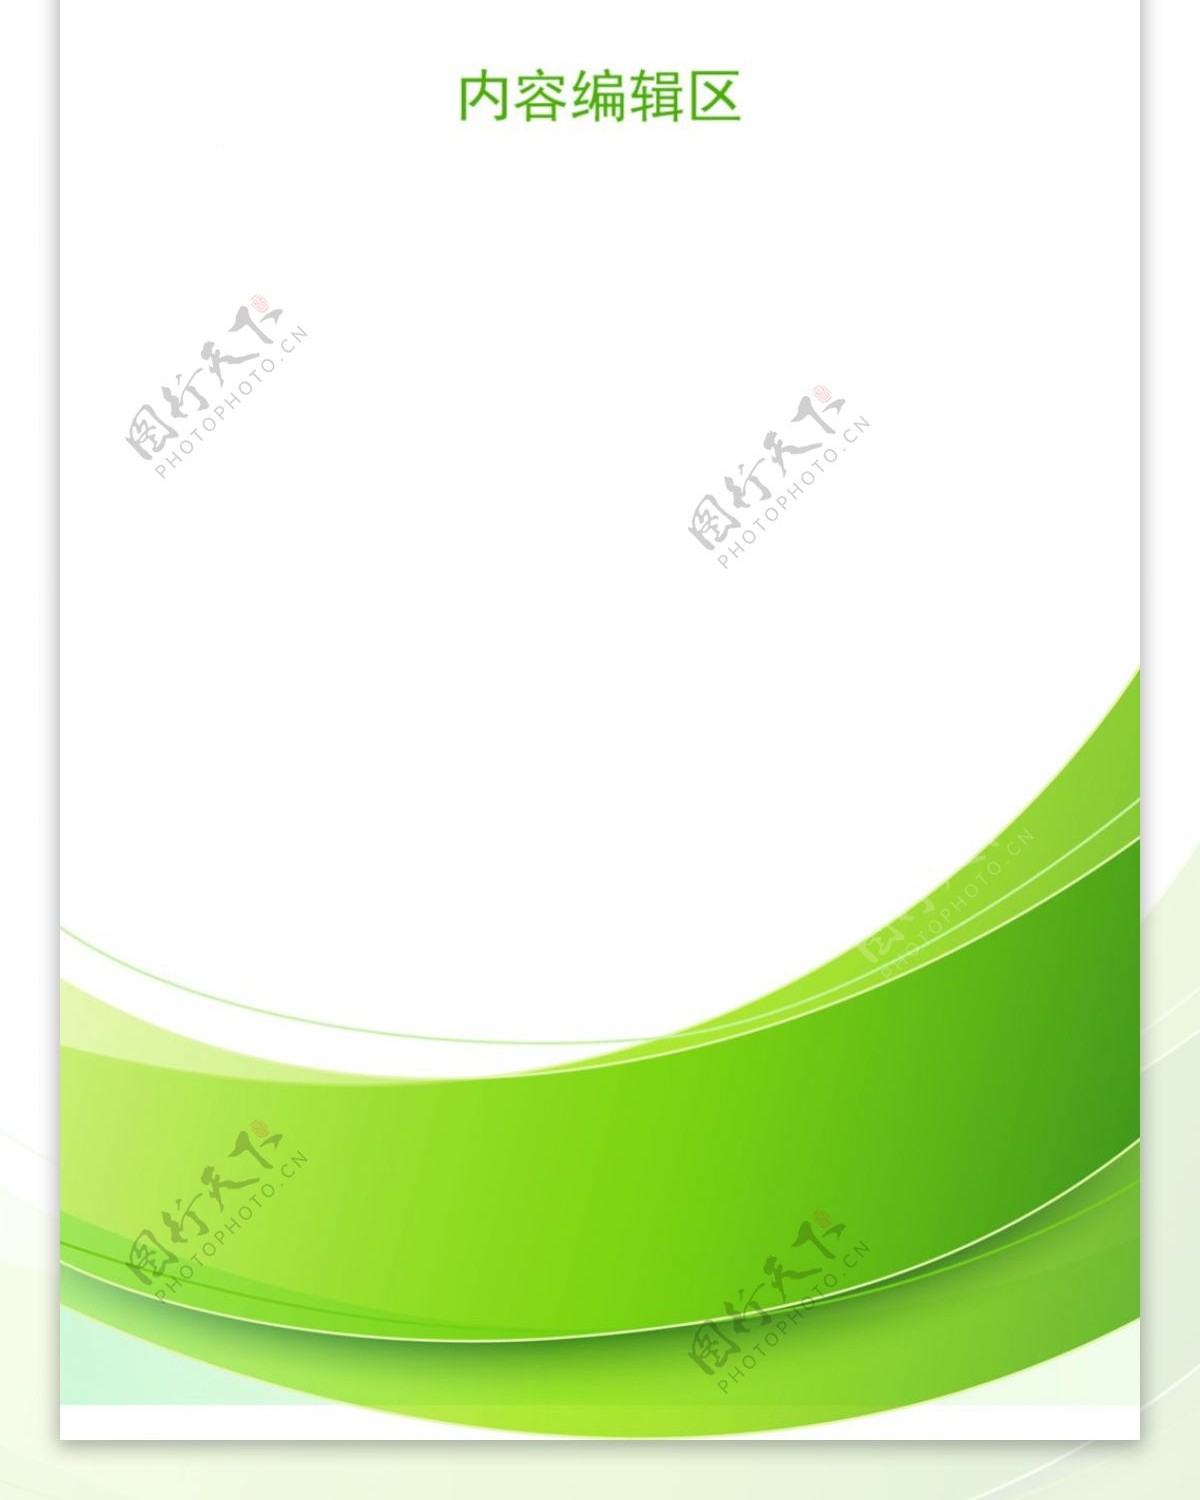 精美绿色边框展架设计模板素材画面